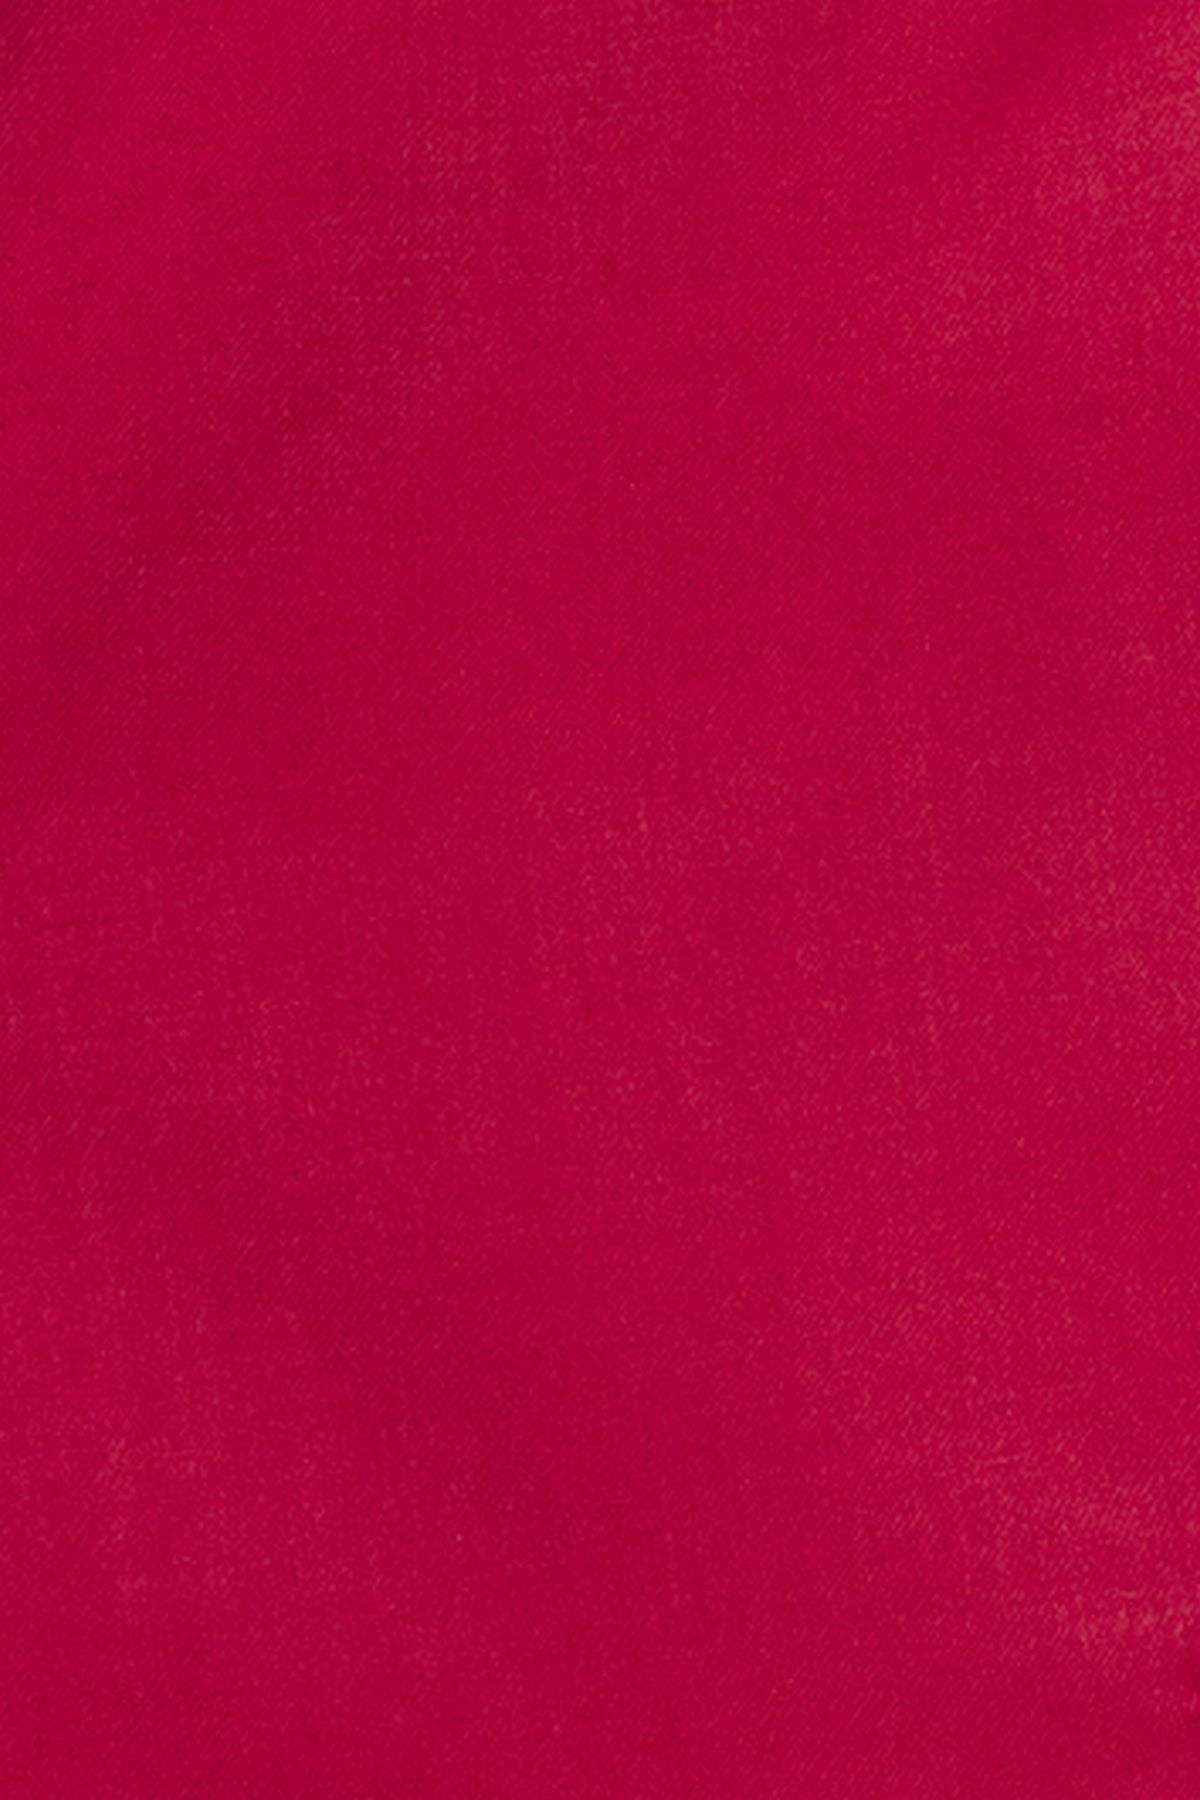 Red Satin Collar 3 Piece Tuxedo